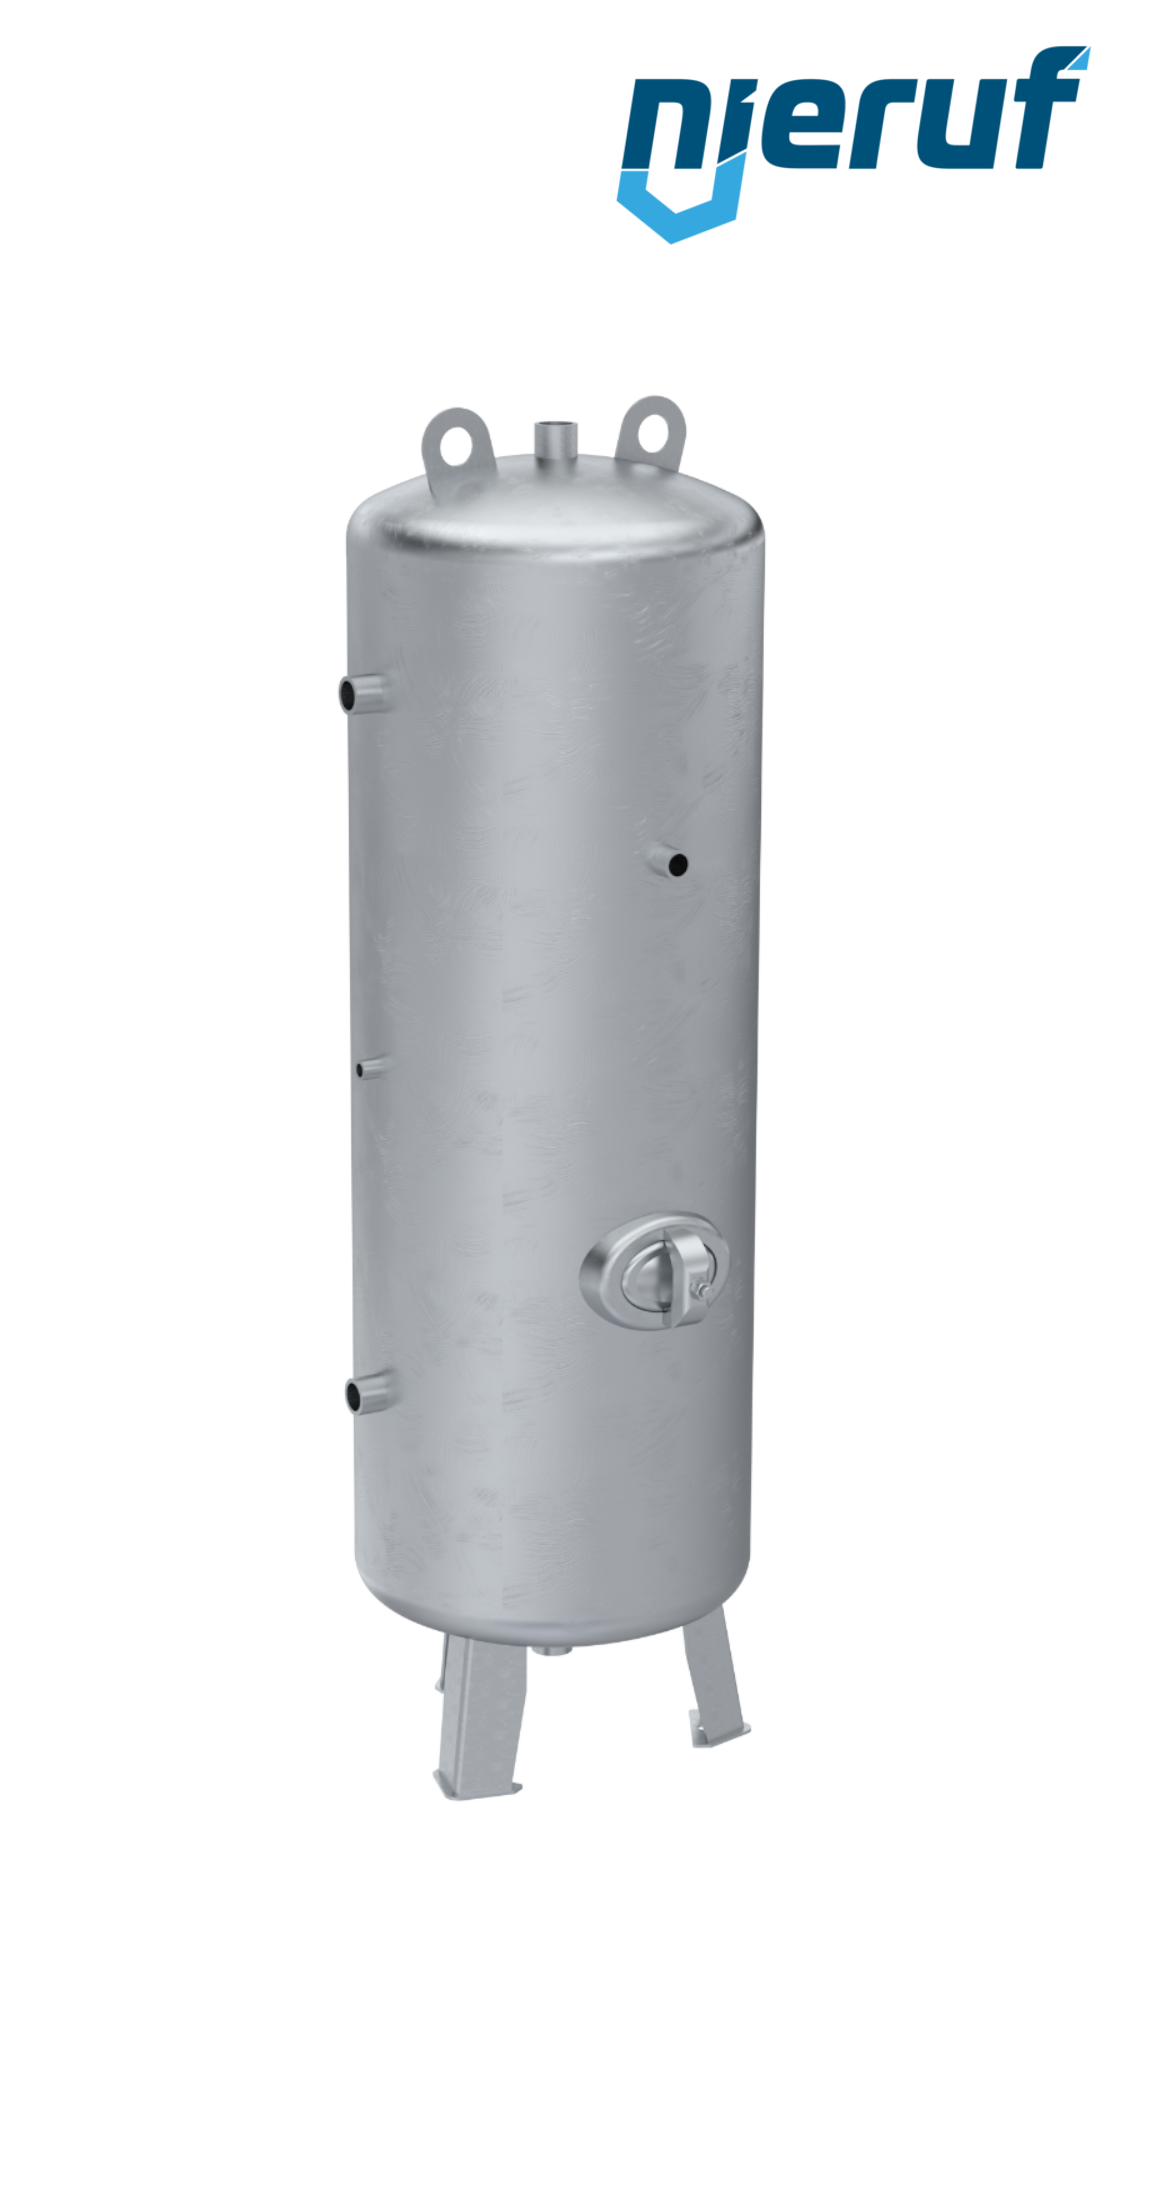 Serbatoi per alta pressione verticale BE02 250 litri, 0-31 bar, acciaio zincato